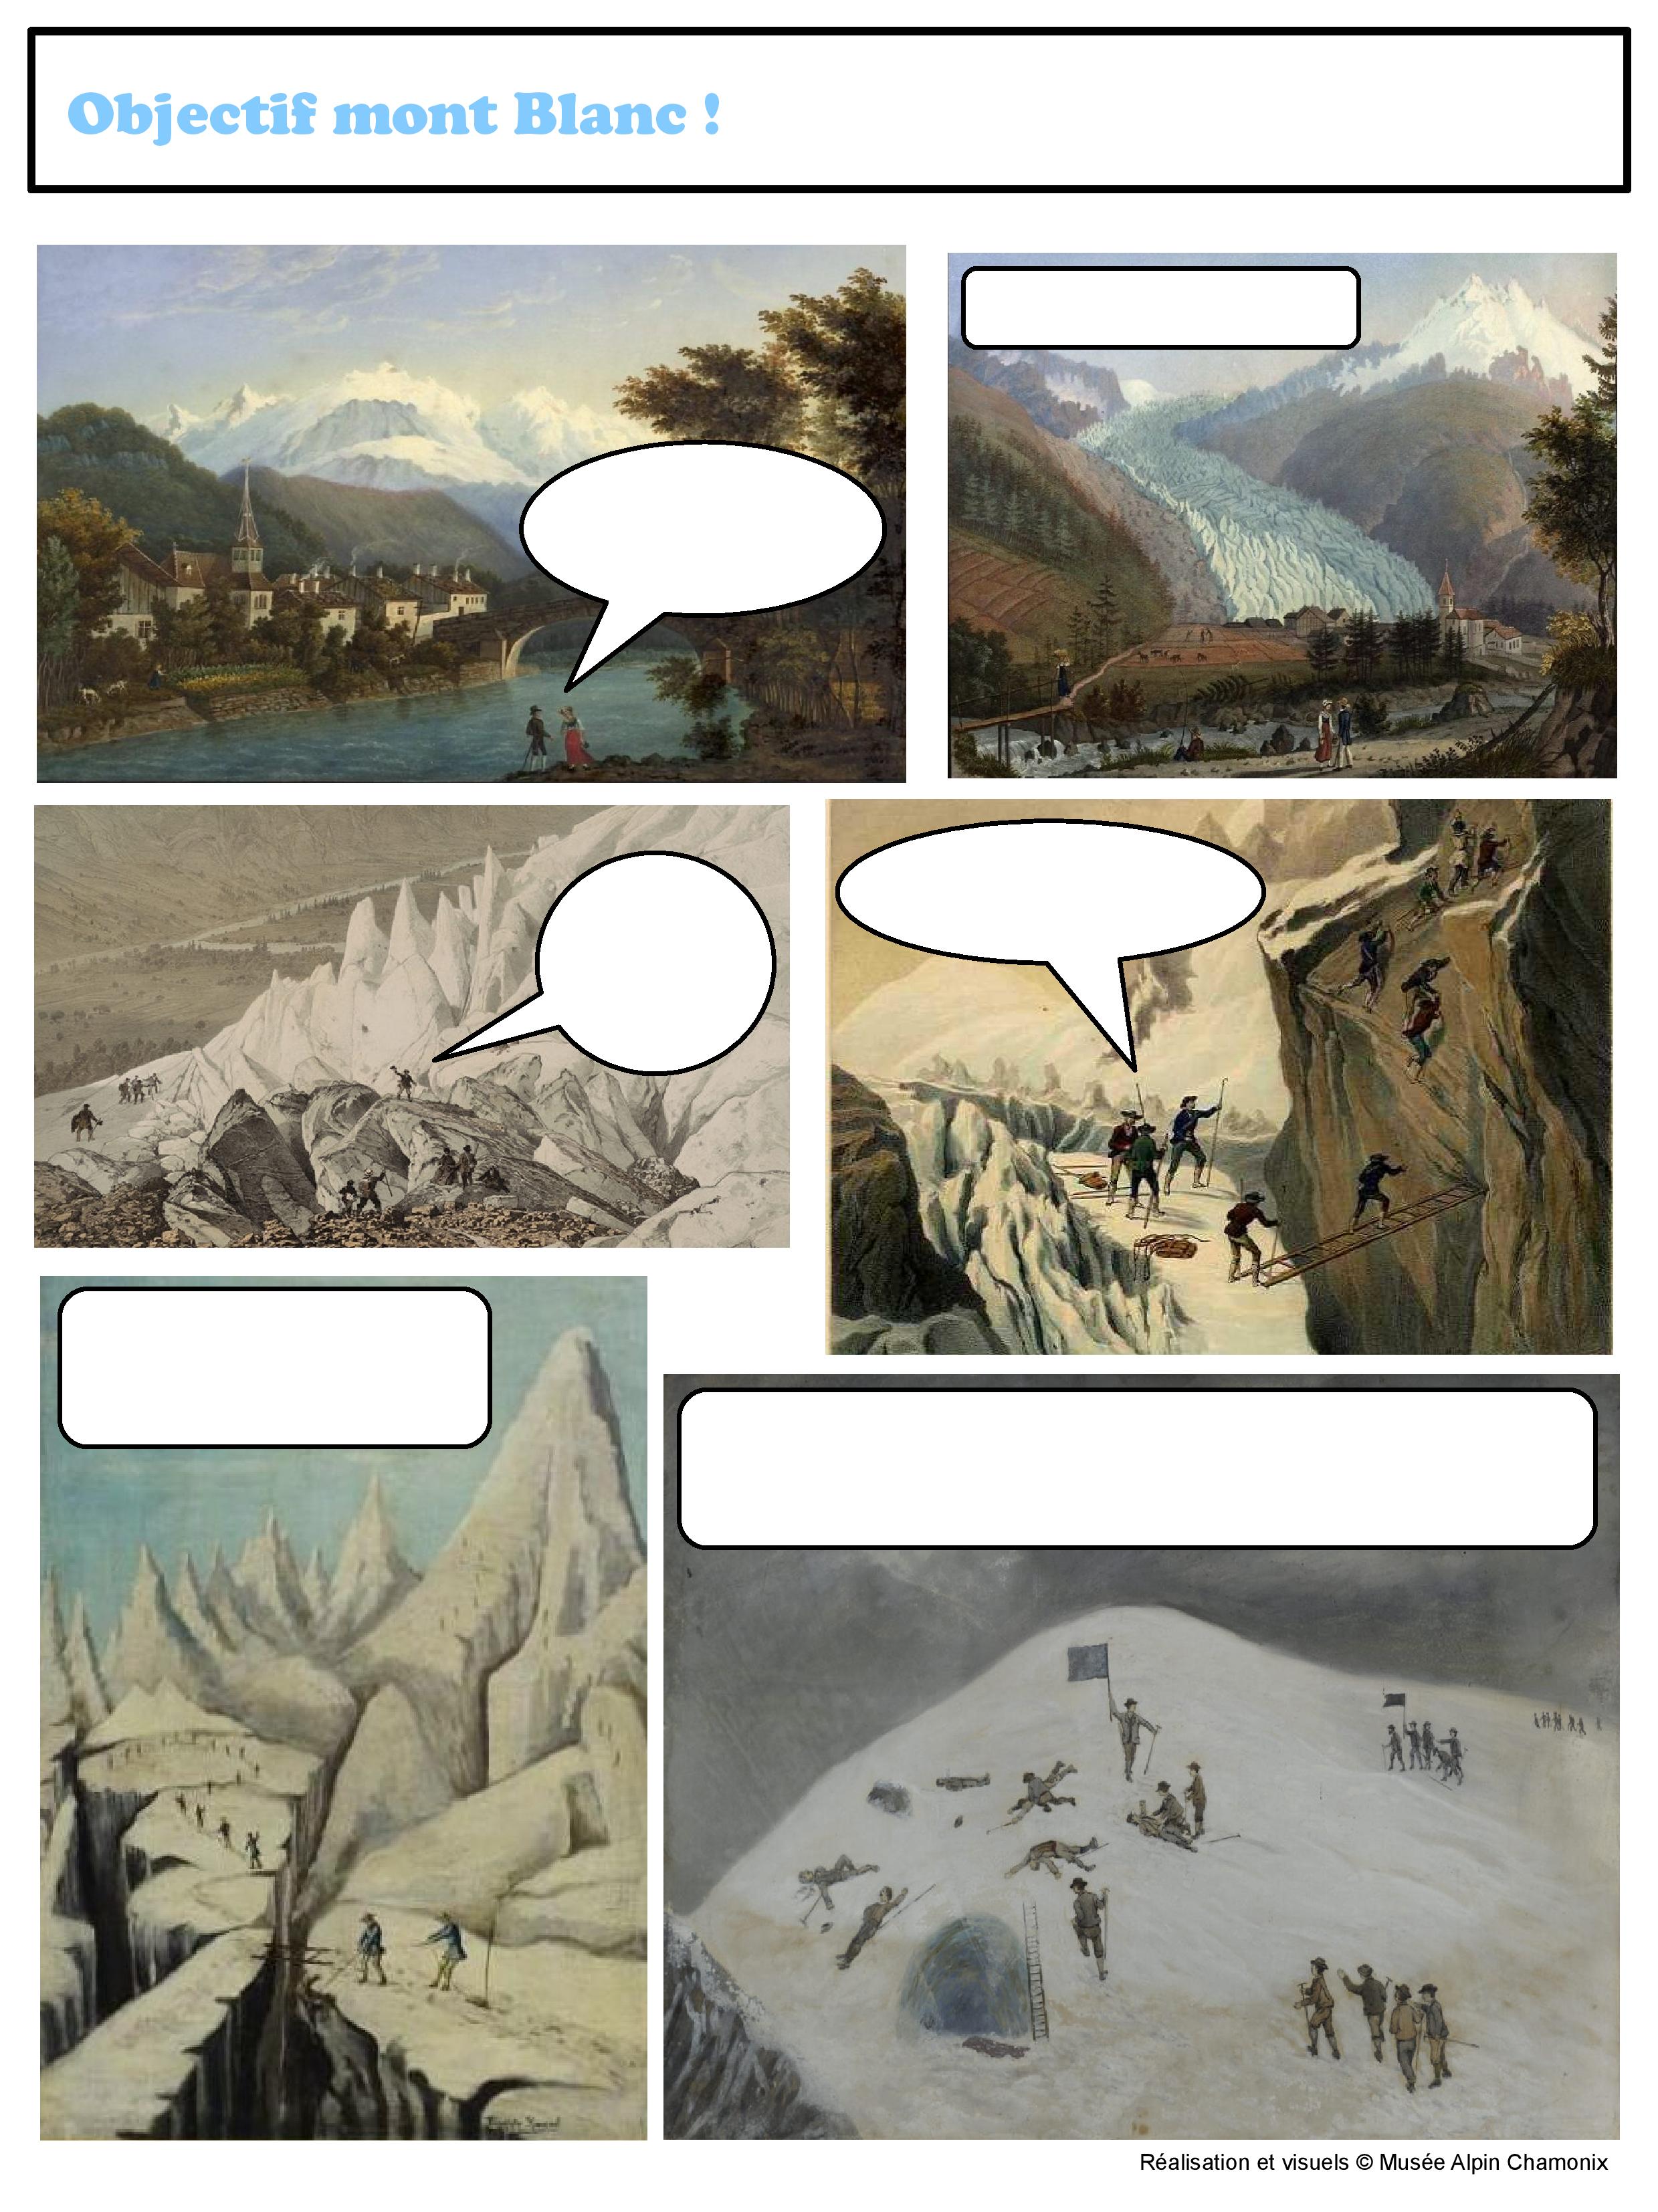 Jeu BD à télécharger : Objectif mont Blanc ©Musée Alpin Chamonix